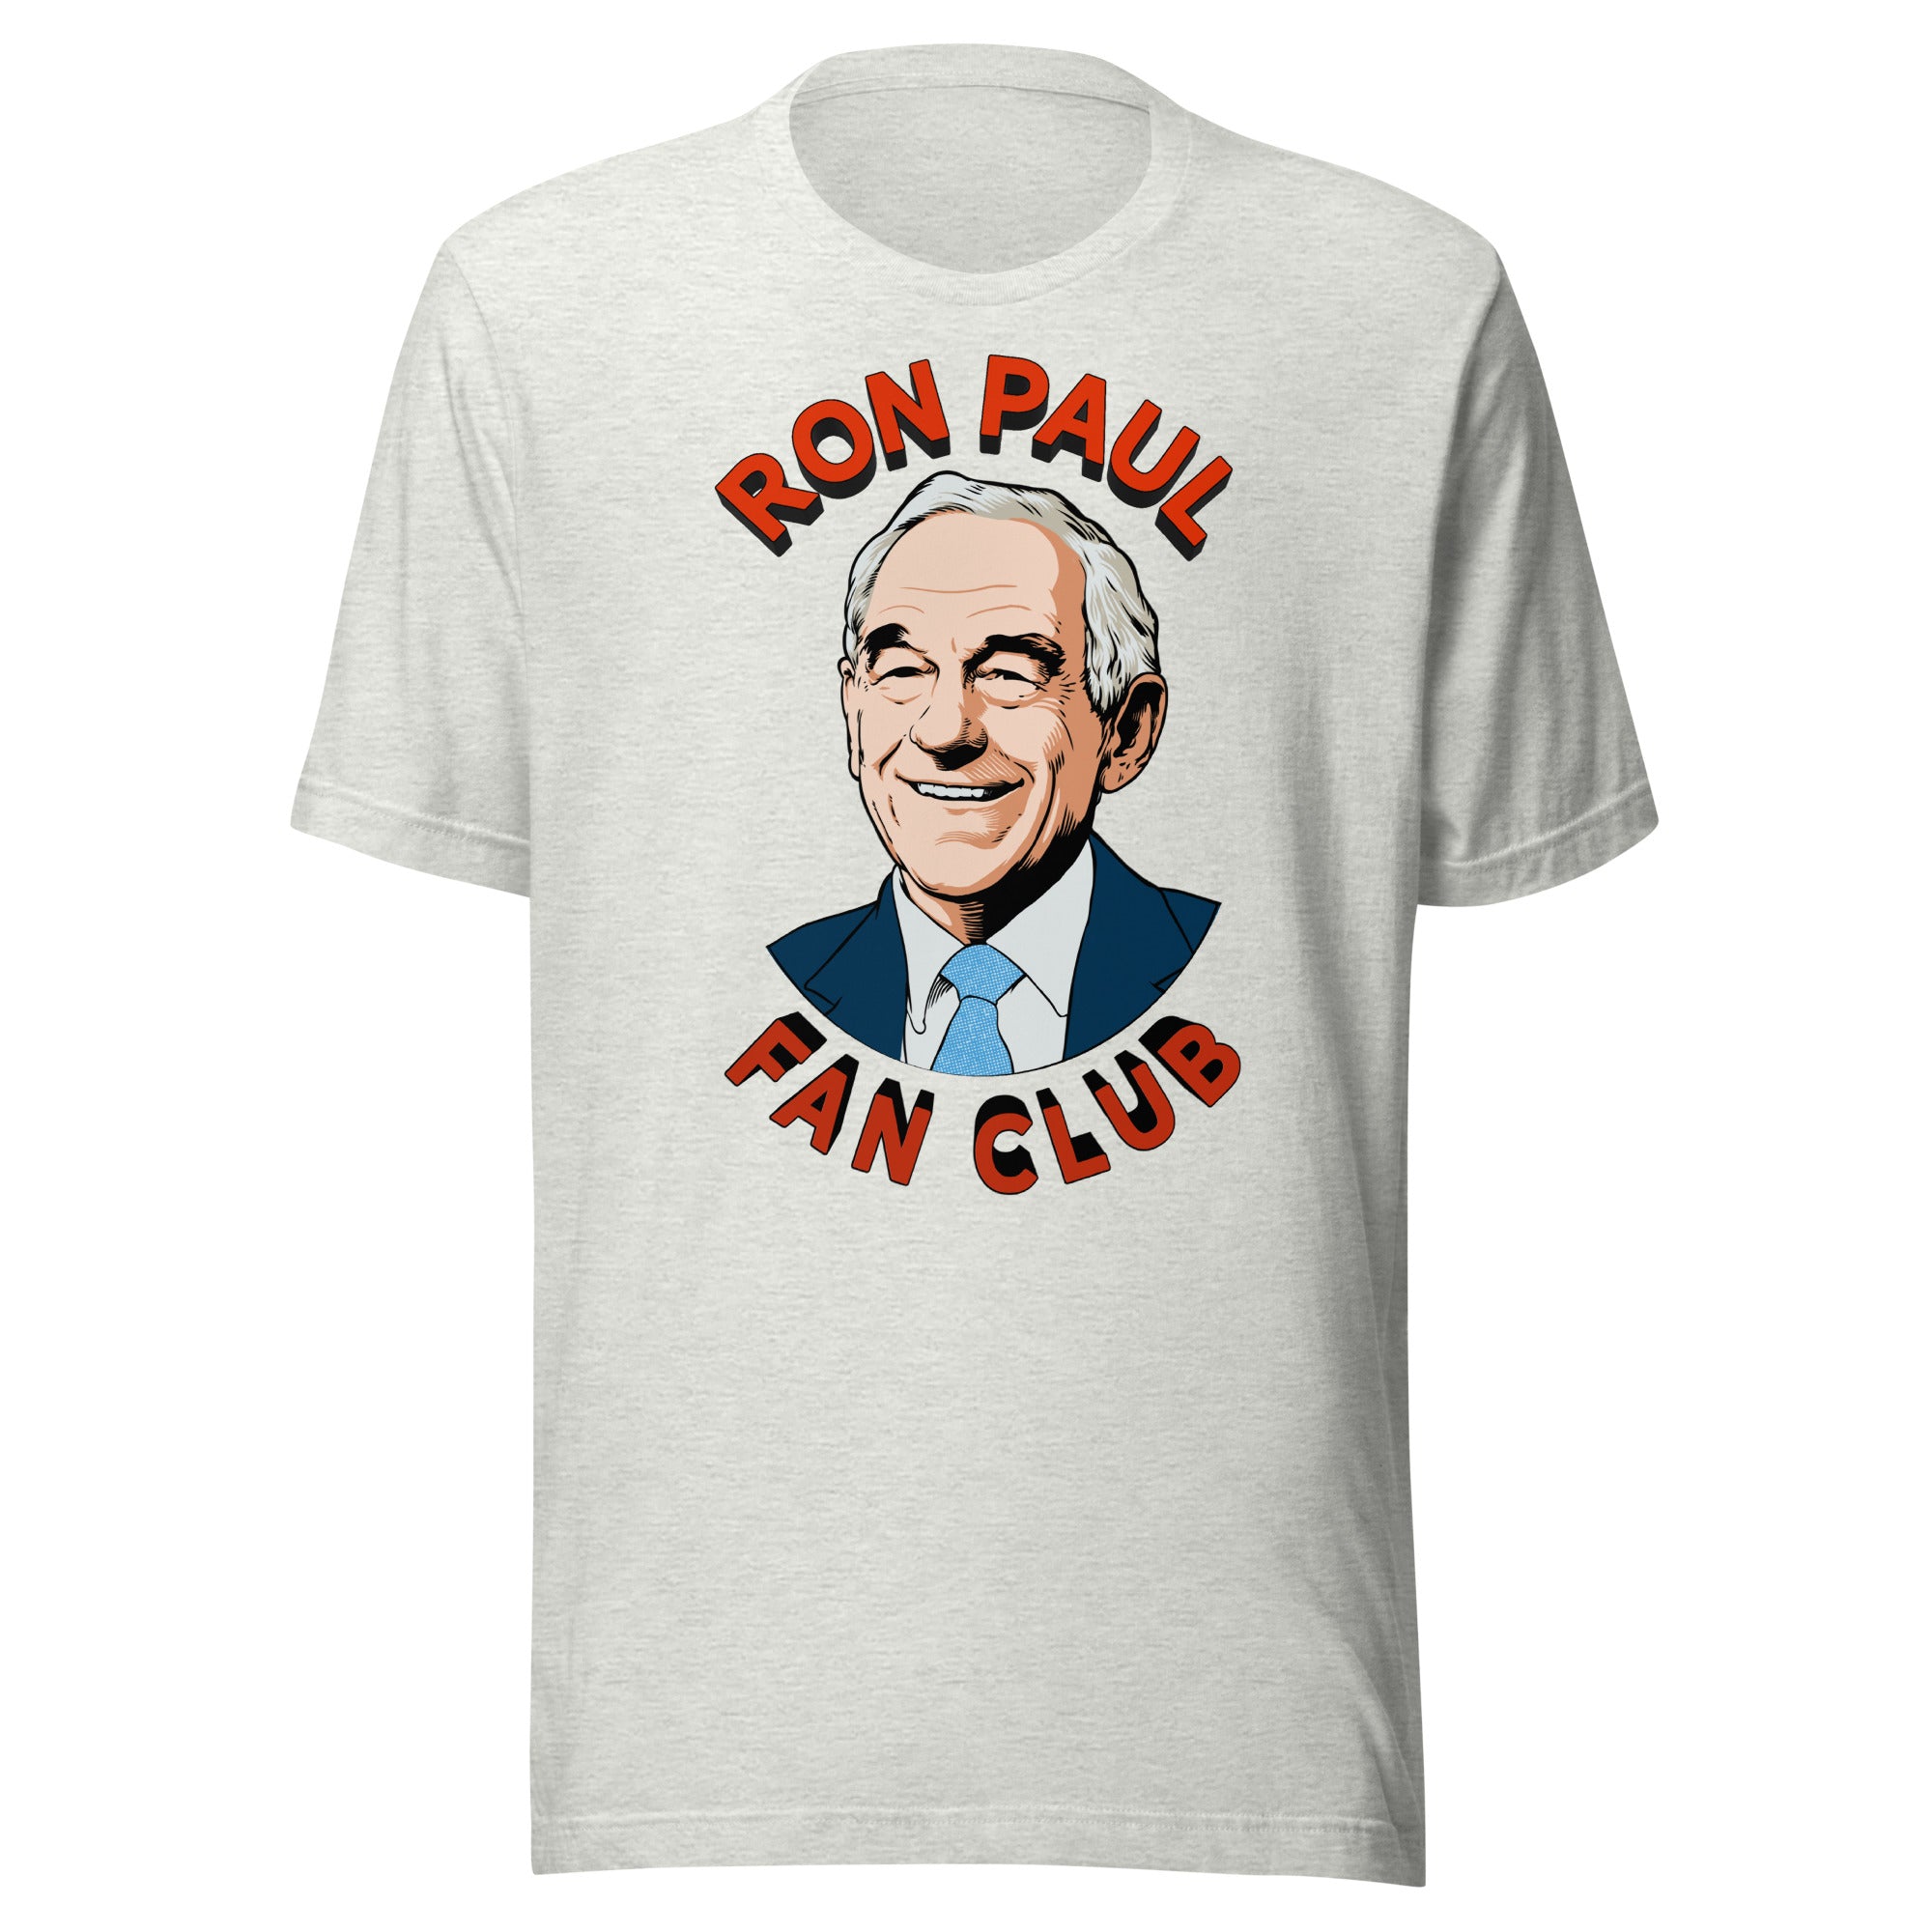 Ron Paul Fan Club T-Shirt